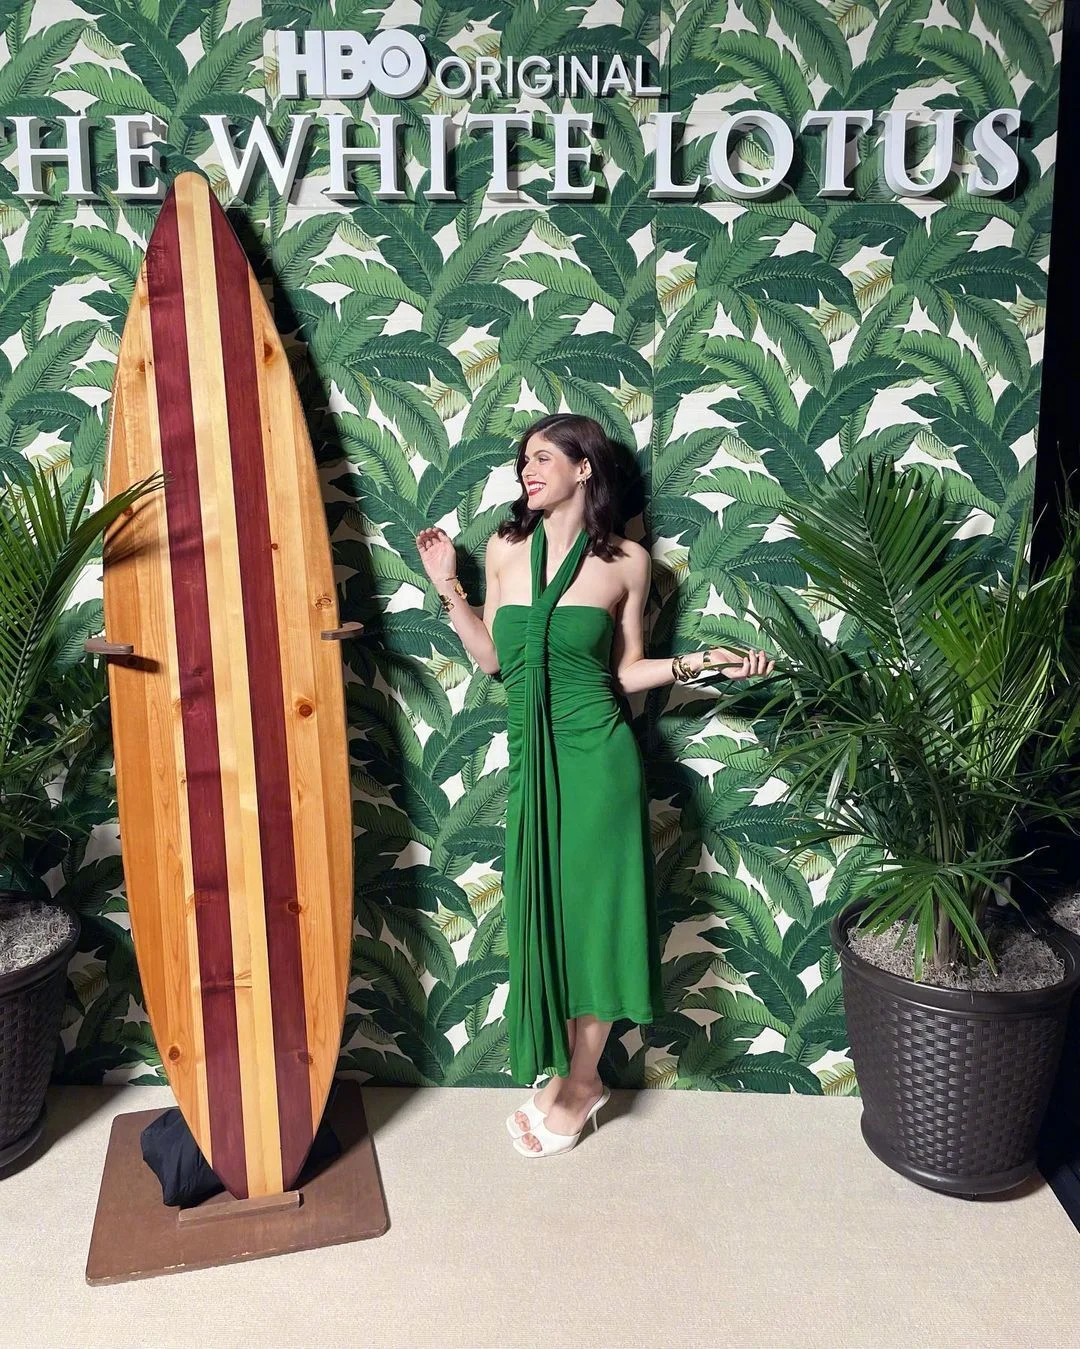 Alexandra Daddario promotes "The White Lotus"